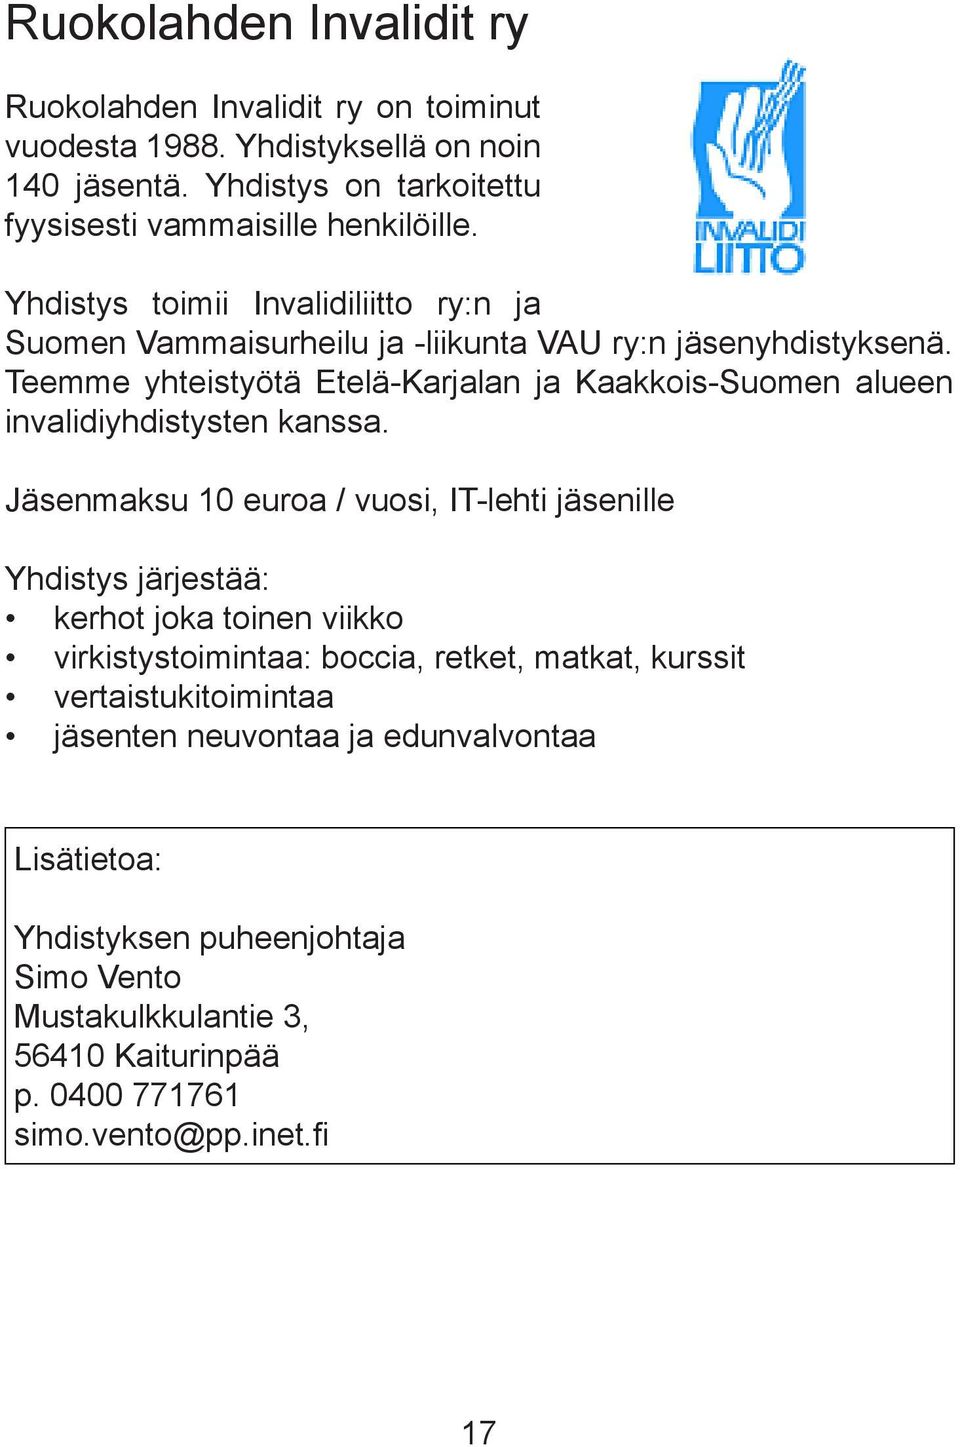 Teemme yhteistyötä Etelä-Karjalan ja Kaakkois-Suomen alueen invalidiyhdistysten kanssa.